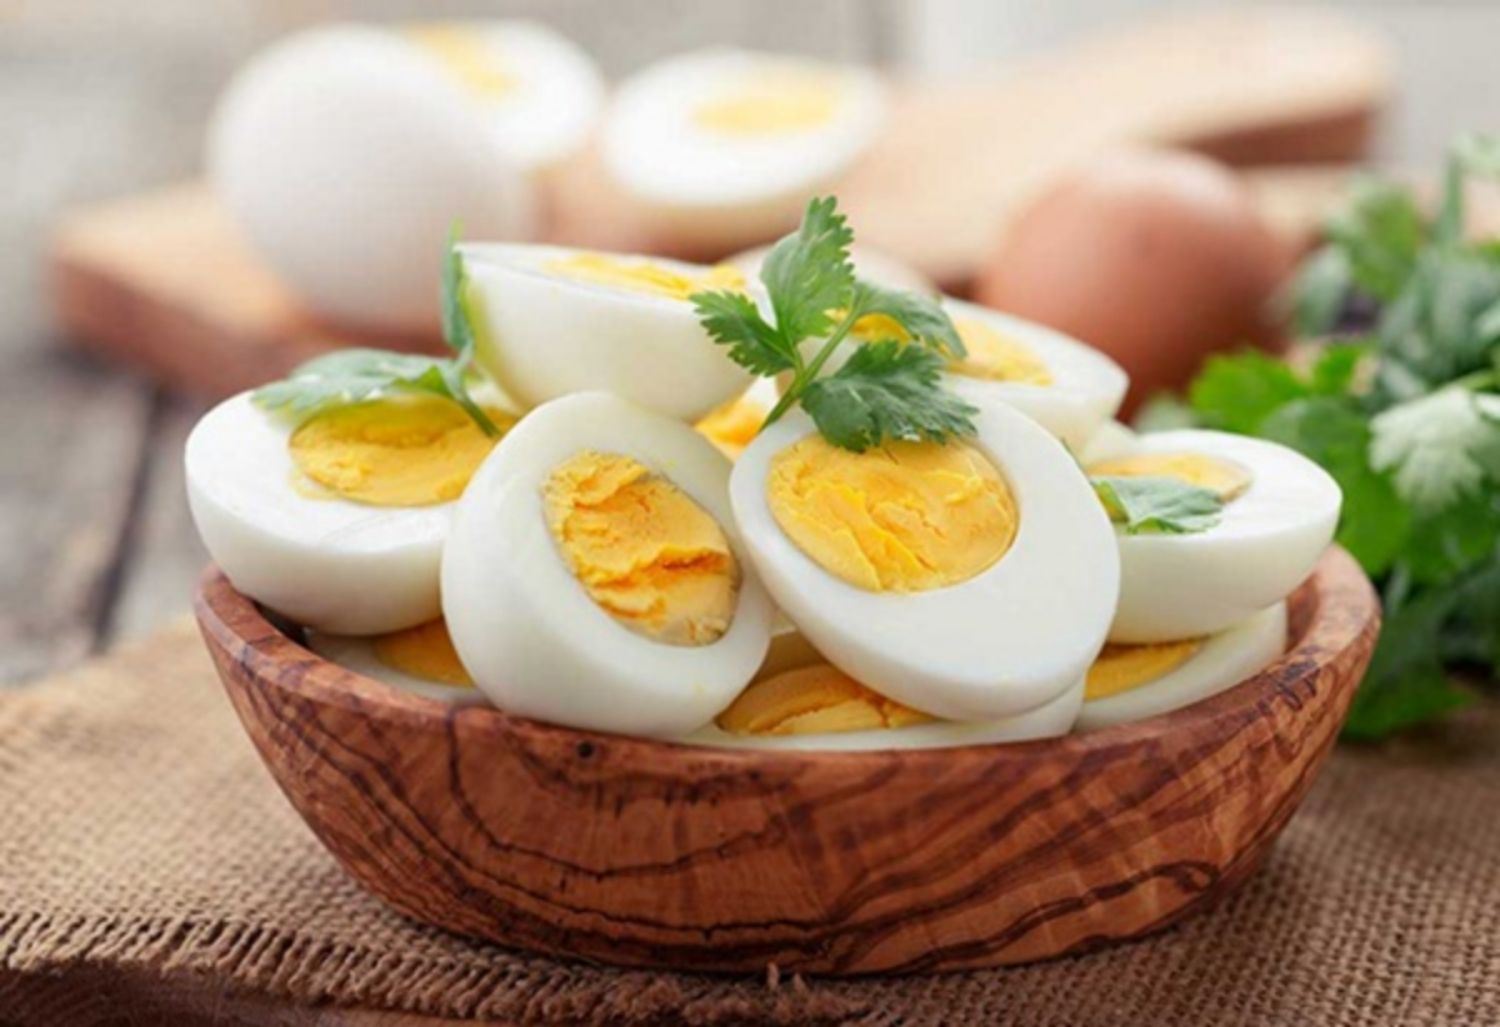 Hướng dẫn giảm cân bằng trứng luộc